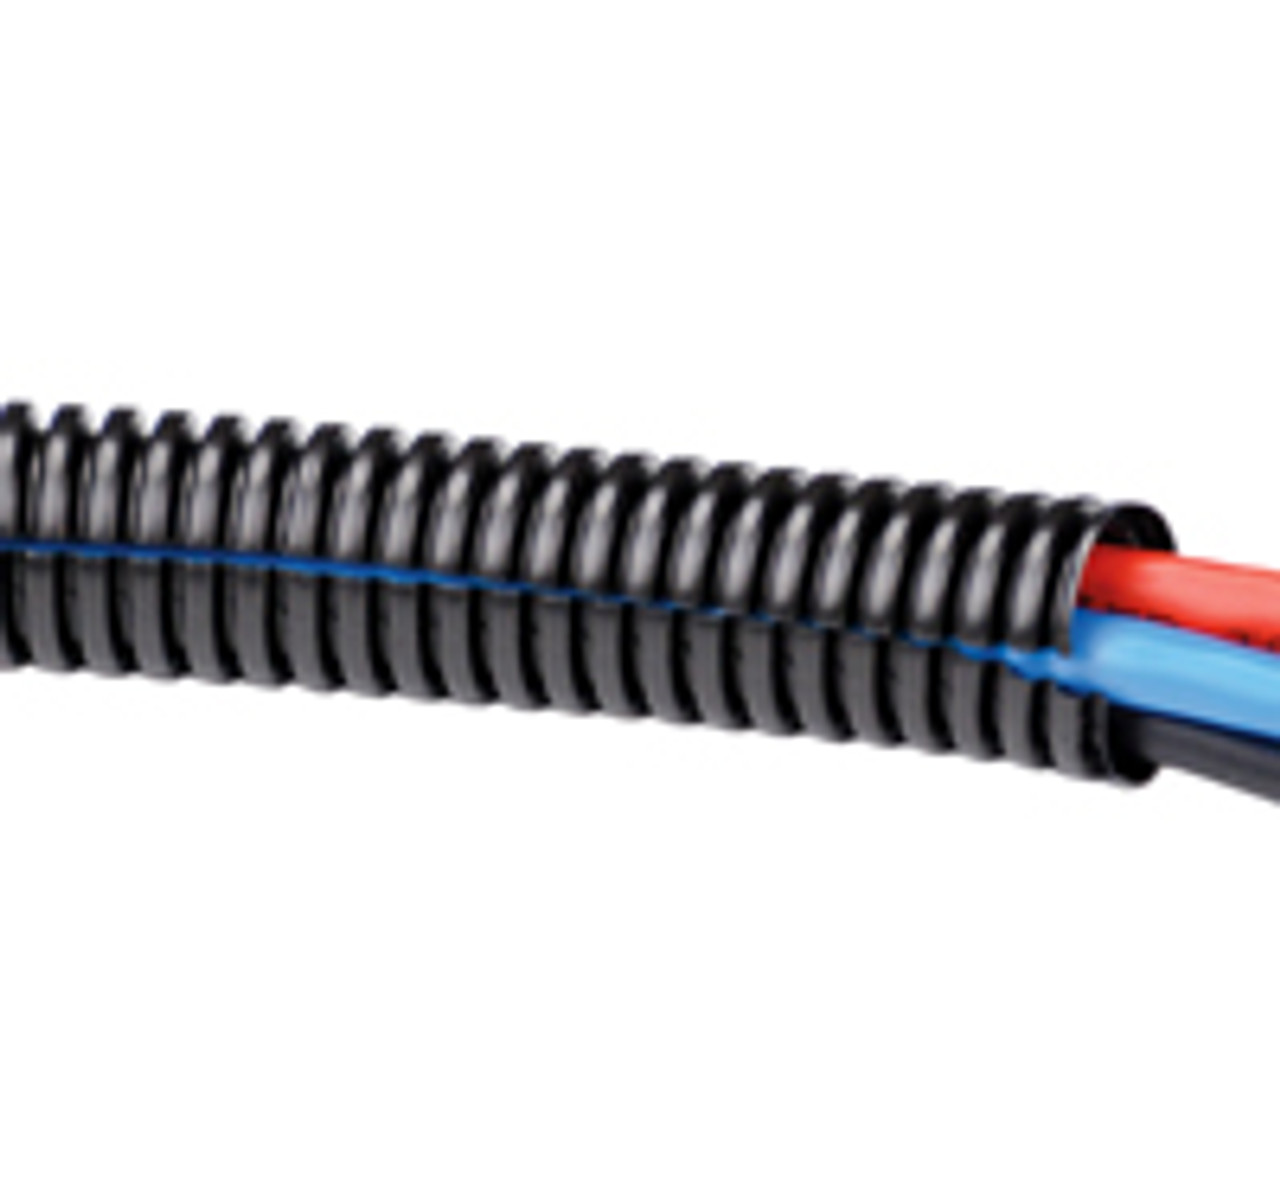 Kable Kontrol Wire Loom Tubing - Black - Price Per Each